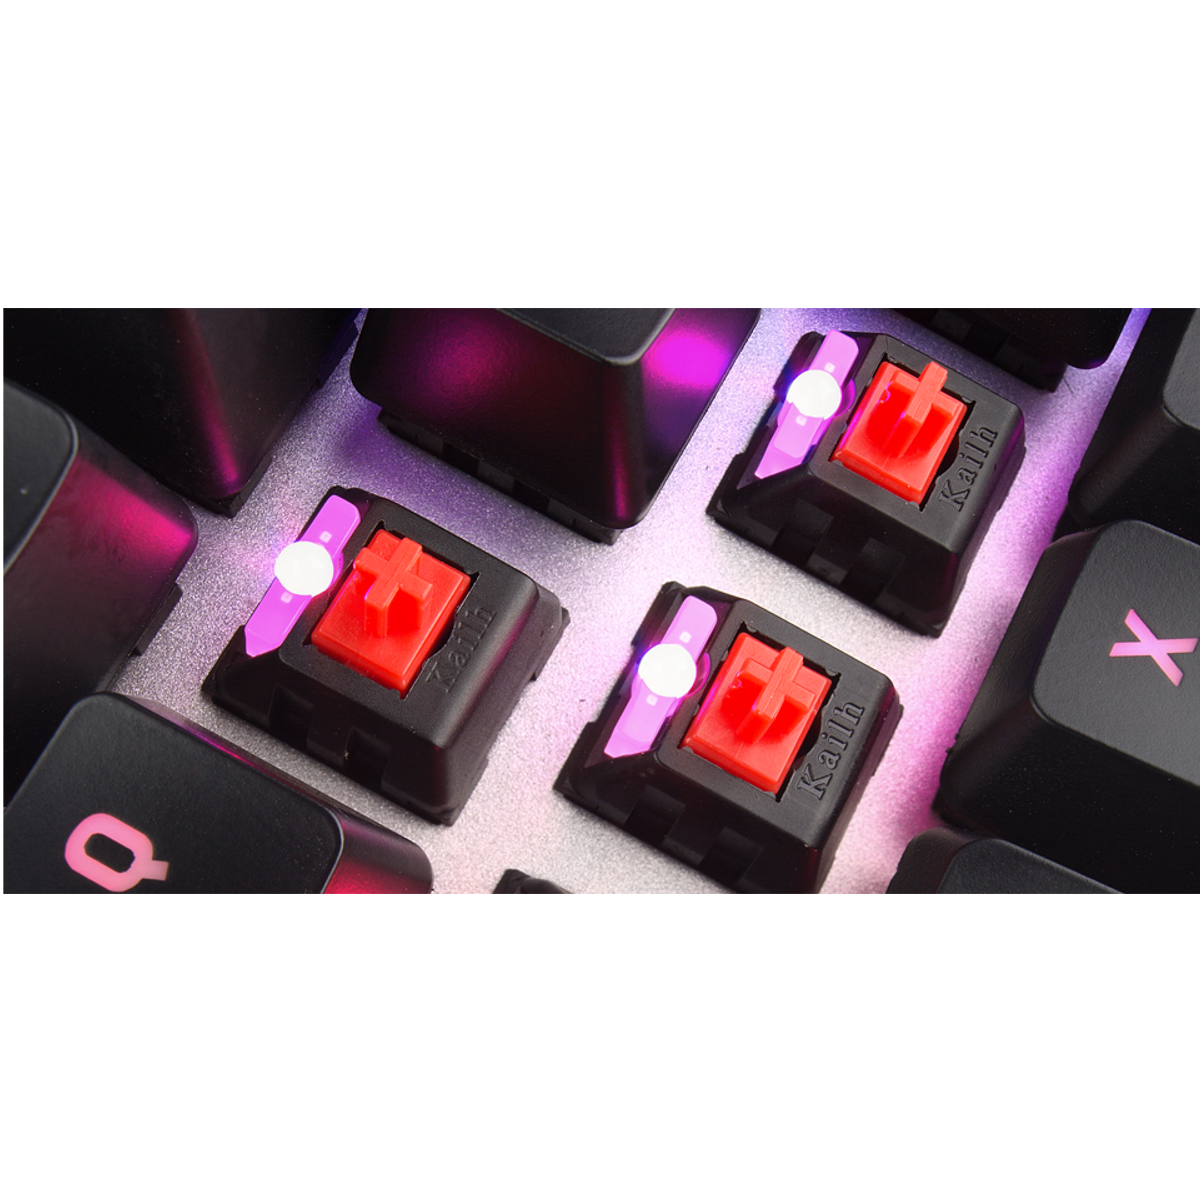 Cherry Xtrfy - Cherry Xtrfy K2-RGB Mechanical Gaming Keyboard Kailh Red Switch UK Layout (XG-K2-R-RGB-UK)